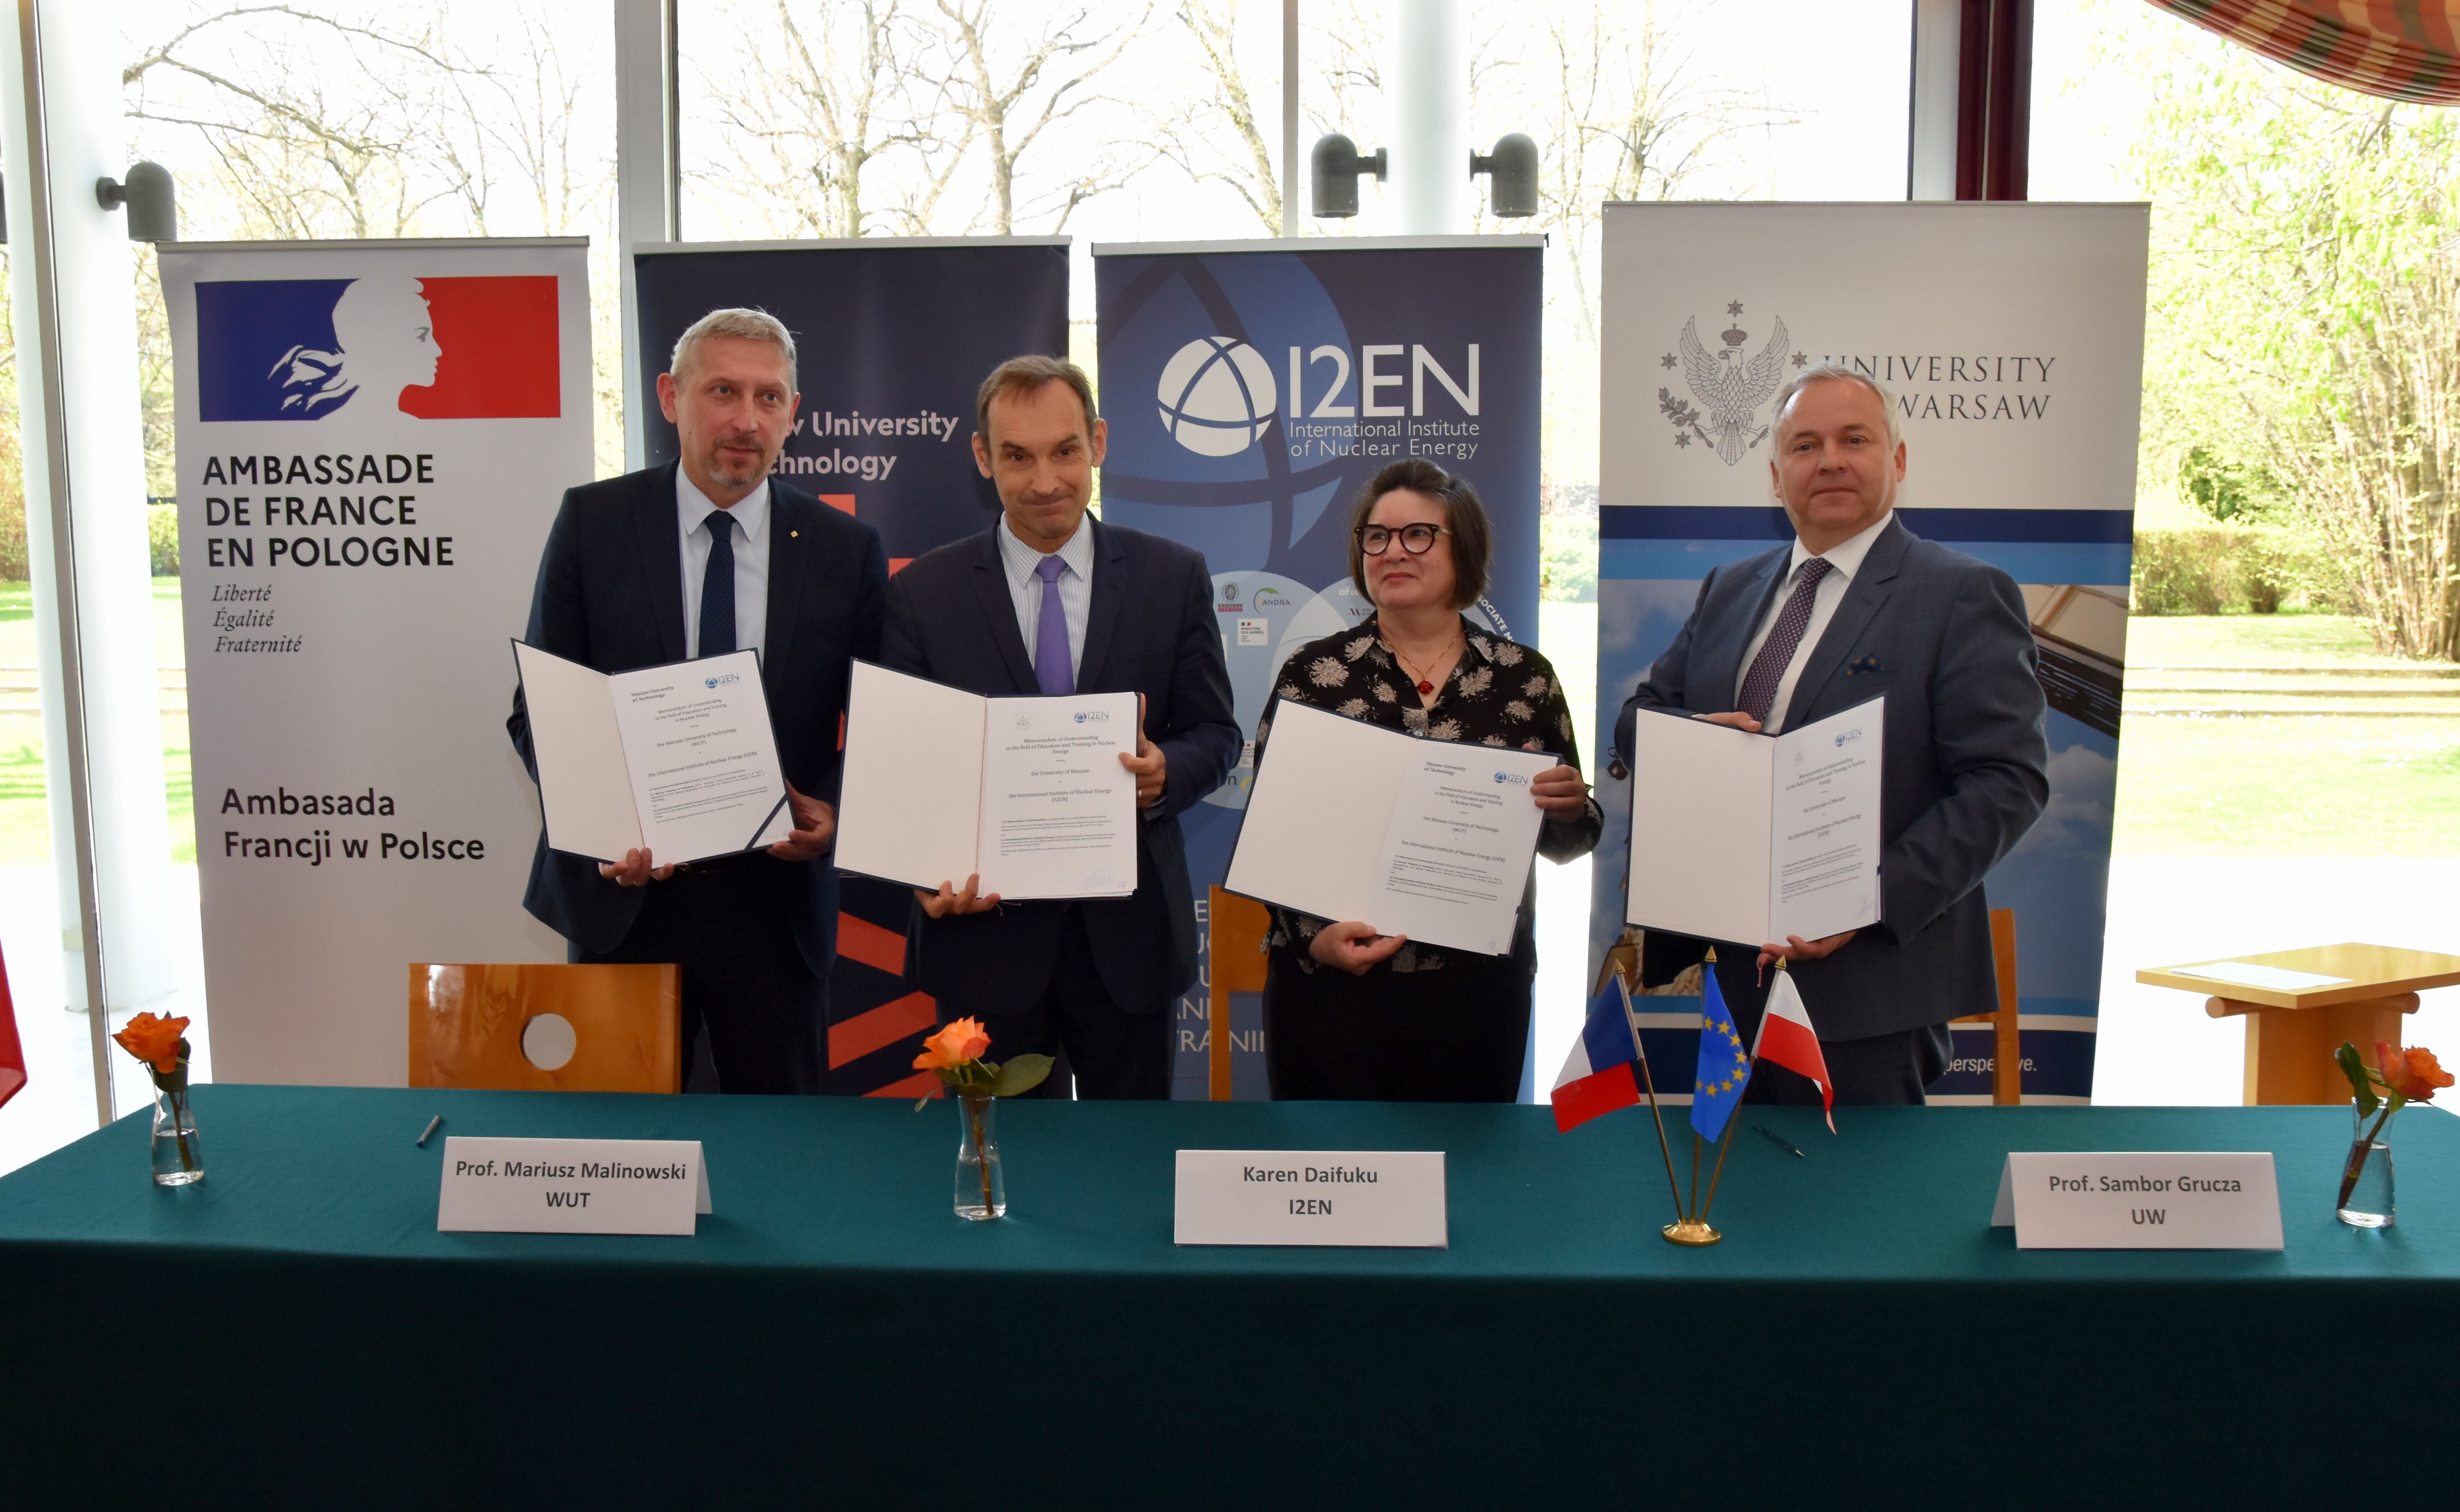 Podpisanie umowy o współpracy przez Międzynarodowy Instytut Energii Jądrowej (I2EN) z Francji oraz Politechnikę Warszawską i Uniwersytet Warszawski